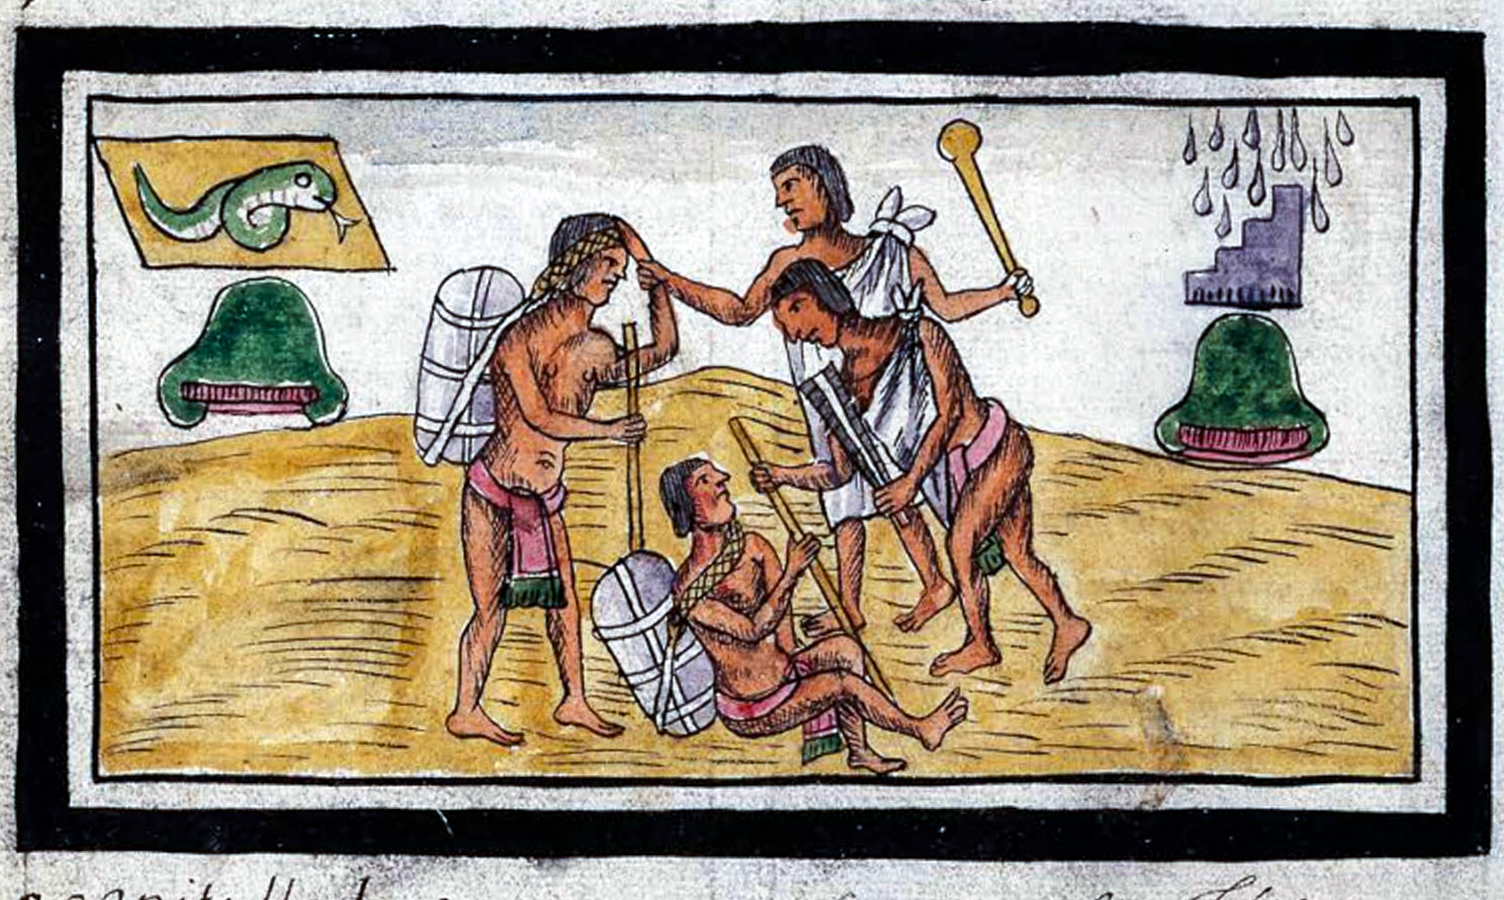 Нападение на торговцев. Historia de las Indias de Nueva España y islas de Tierra Firme.  Diego Durán, 1588.